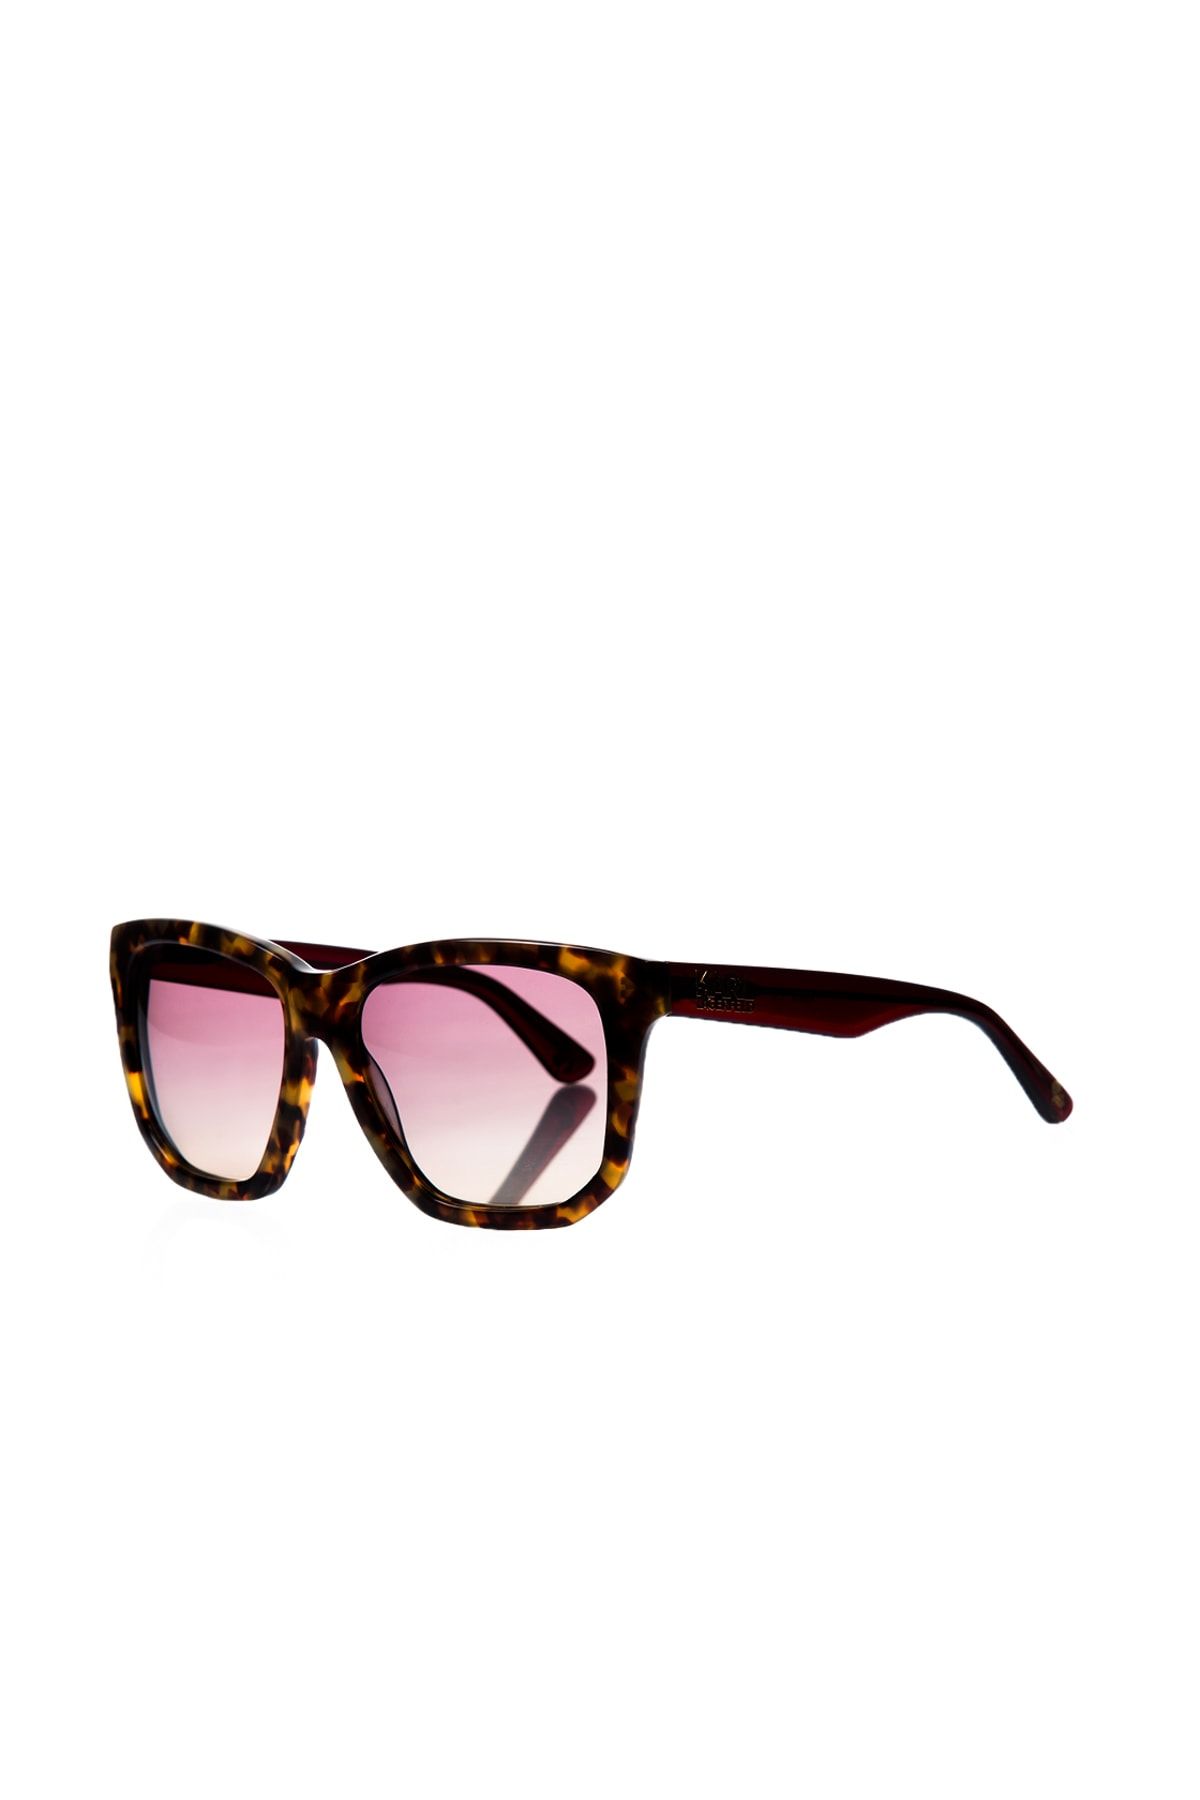 Karl Lagerfeld Kadın Kare Güneş Gözlüğü KL 6019 013